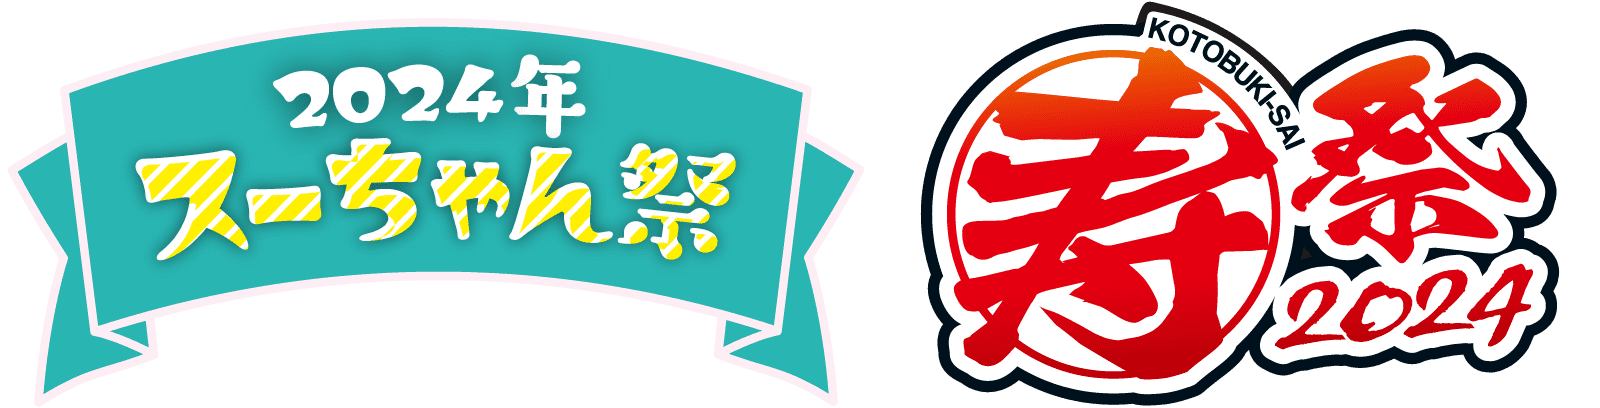 2023年 スーちゃん祭・寿祭 2023 キャンペーン